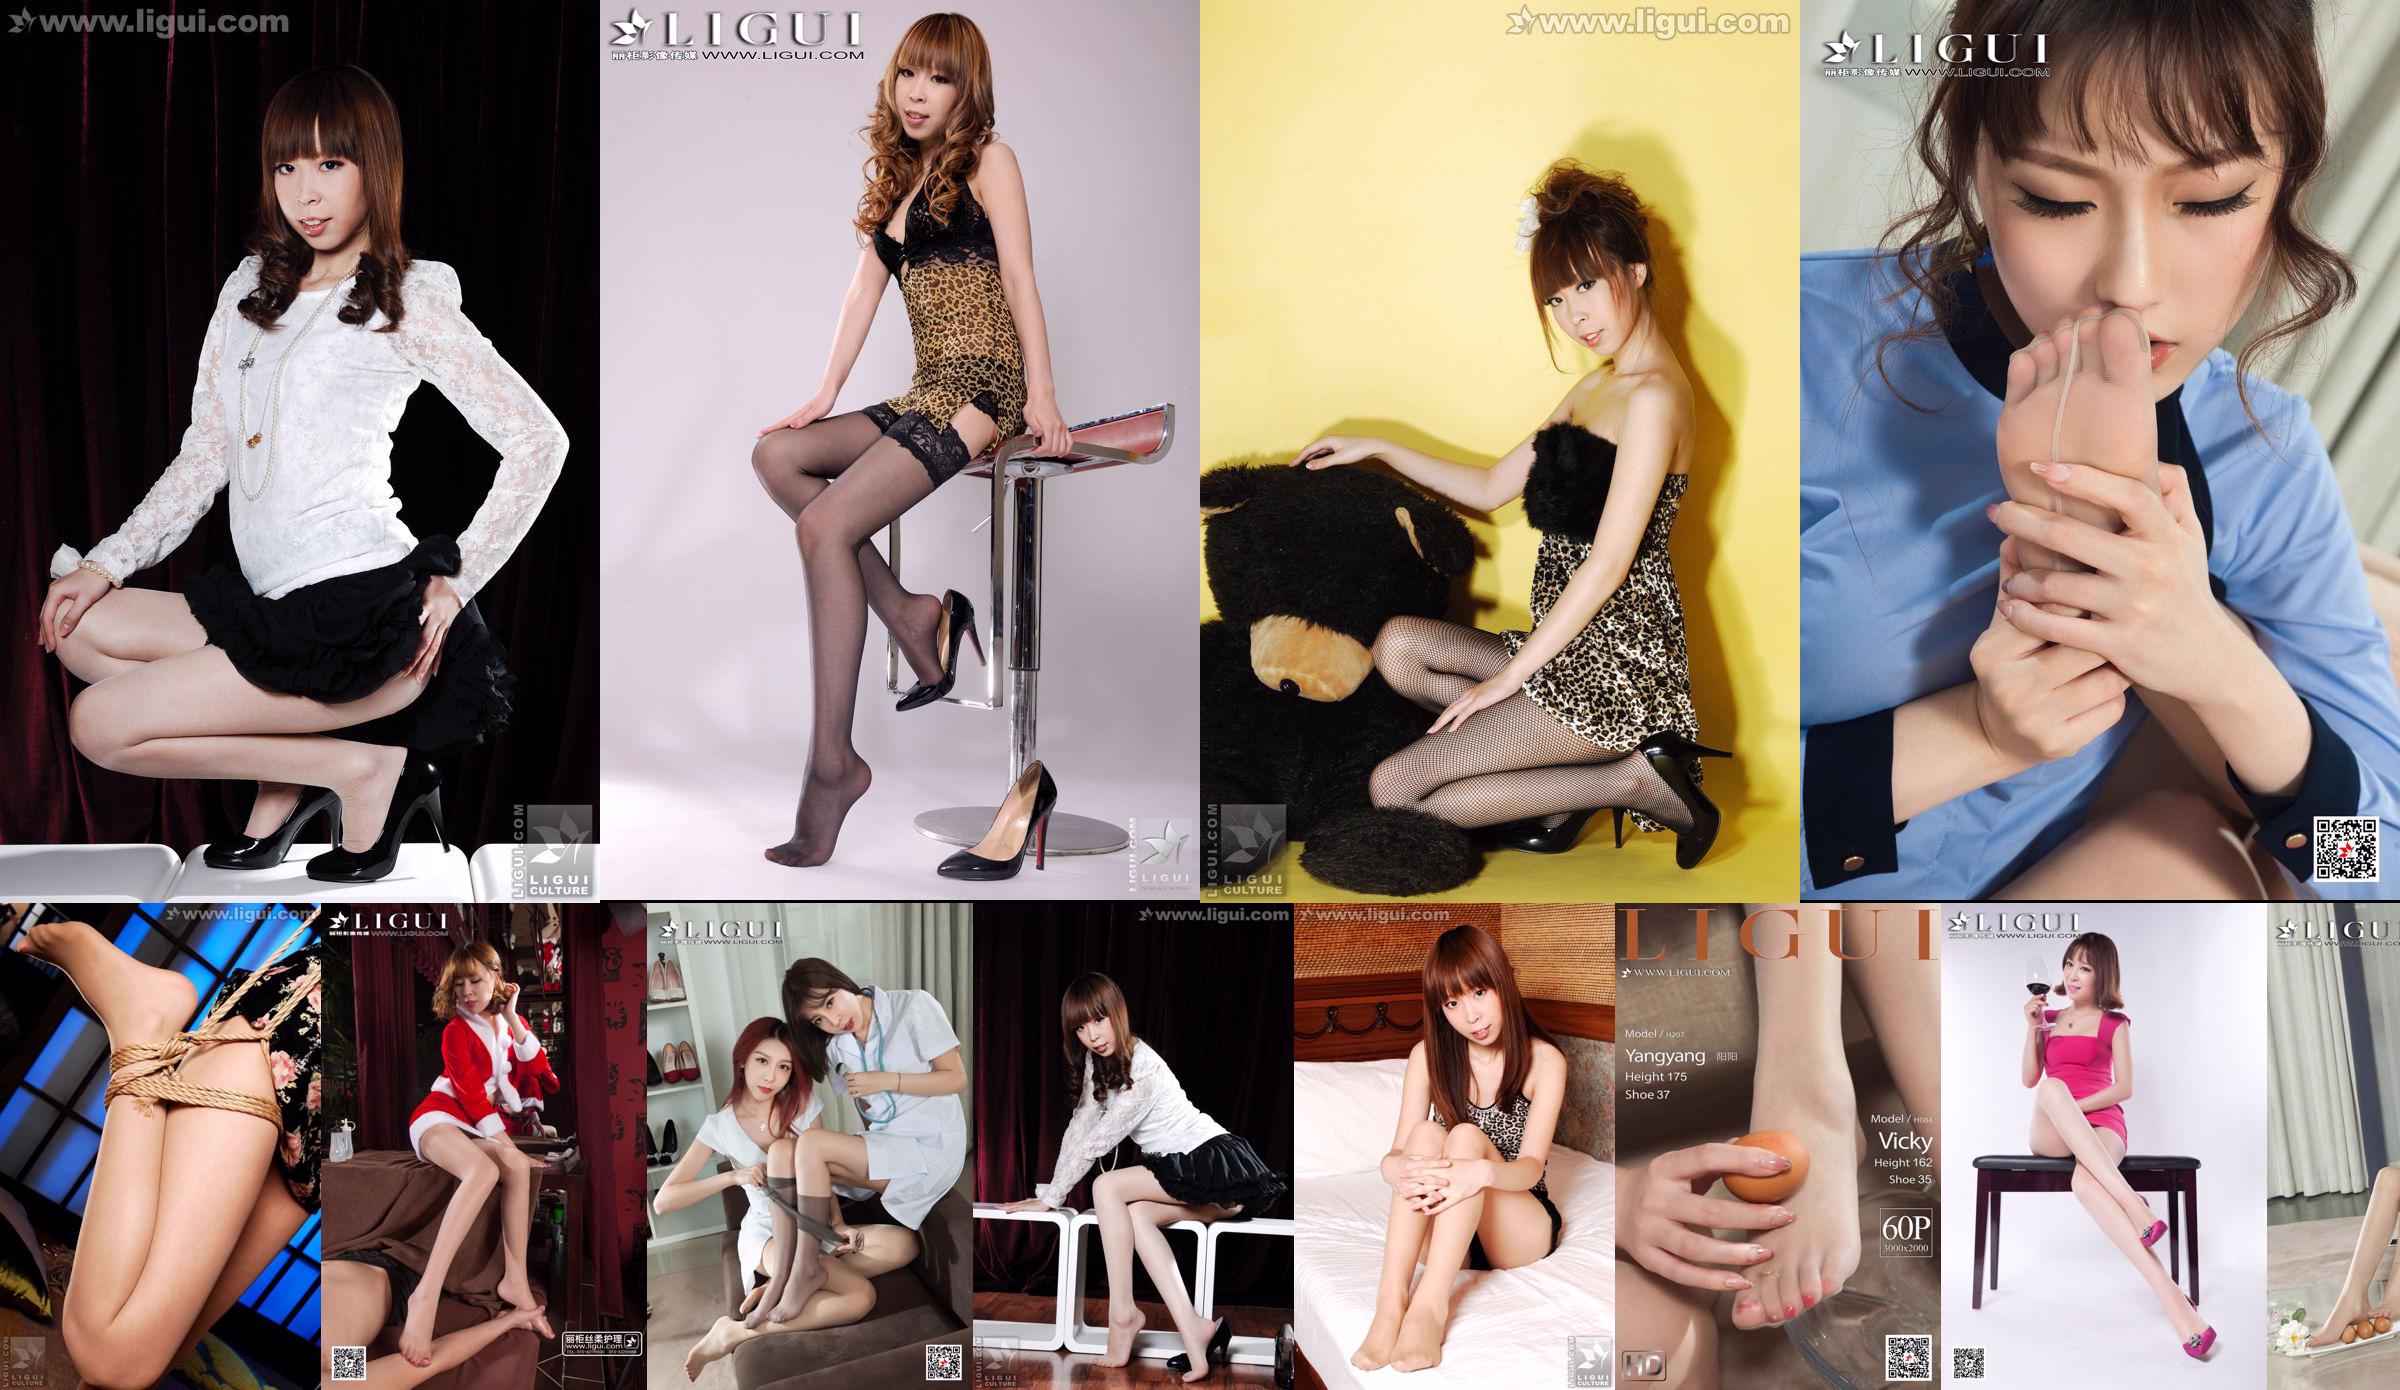 Người mẫu Vicky "Japanese Style: The Bound Girl" [LiGui] Ảnh chân dài xinh đẹp No.c3e850 Trang 5